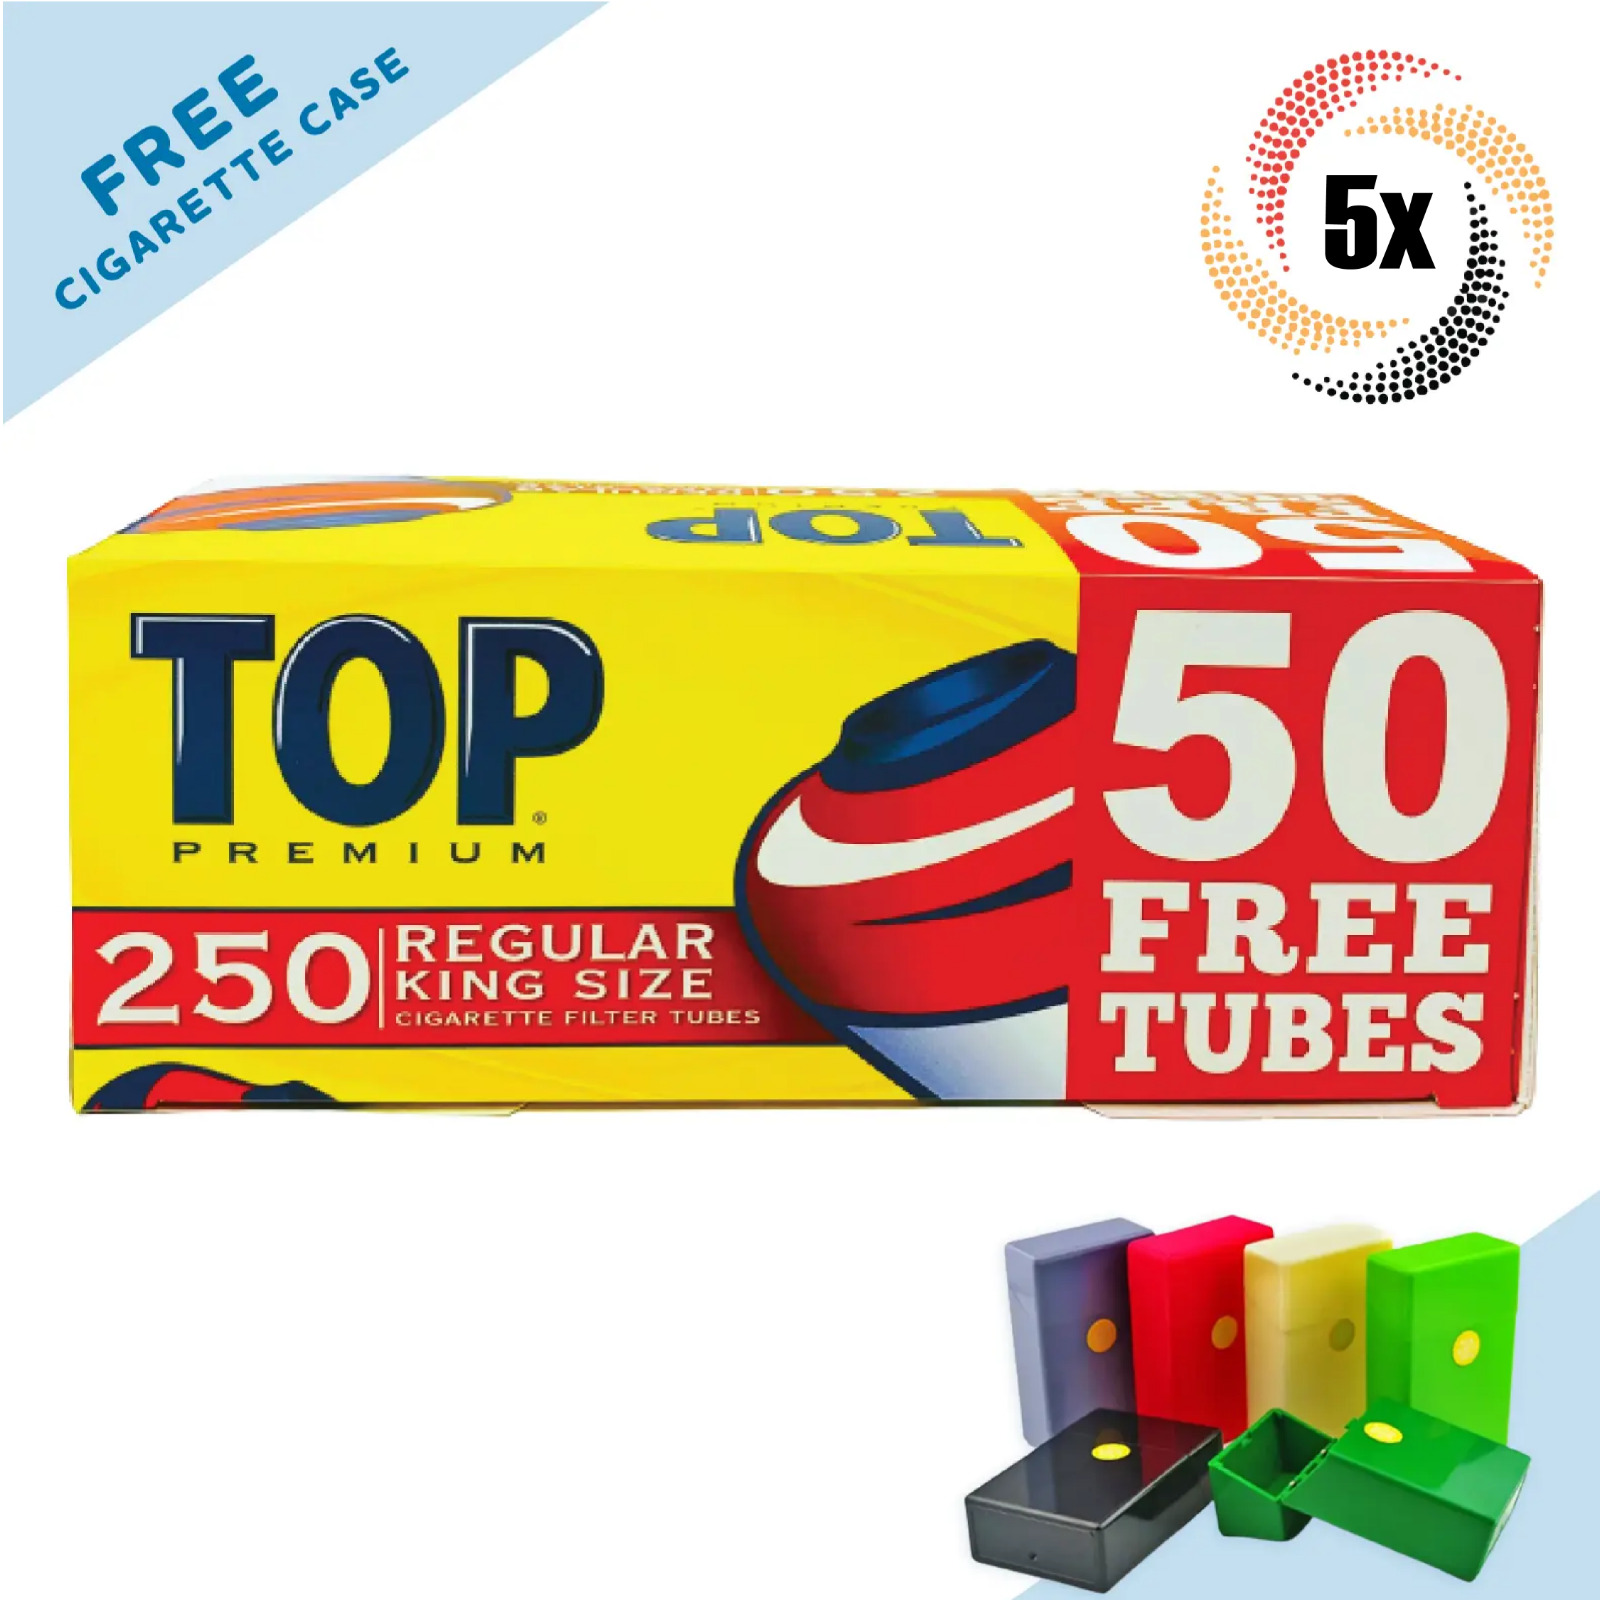 5x Boxes TOP Premium Filter Tubes Regular King Size Cigarette RYO - 1,250 Tubes